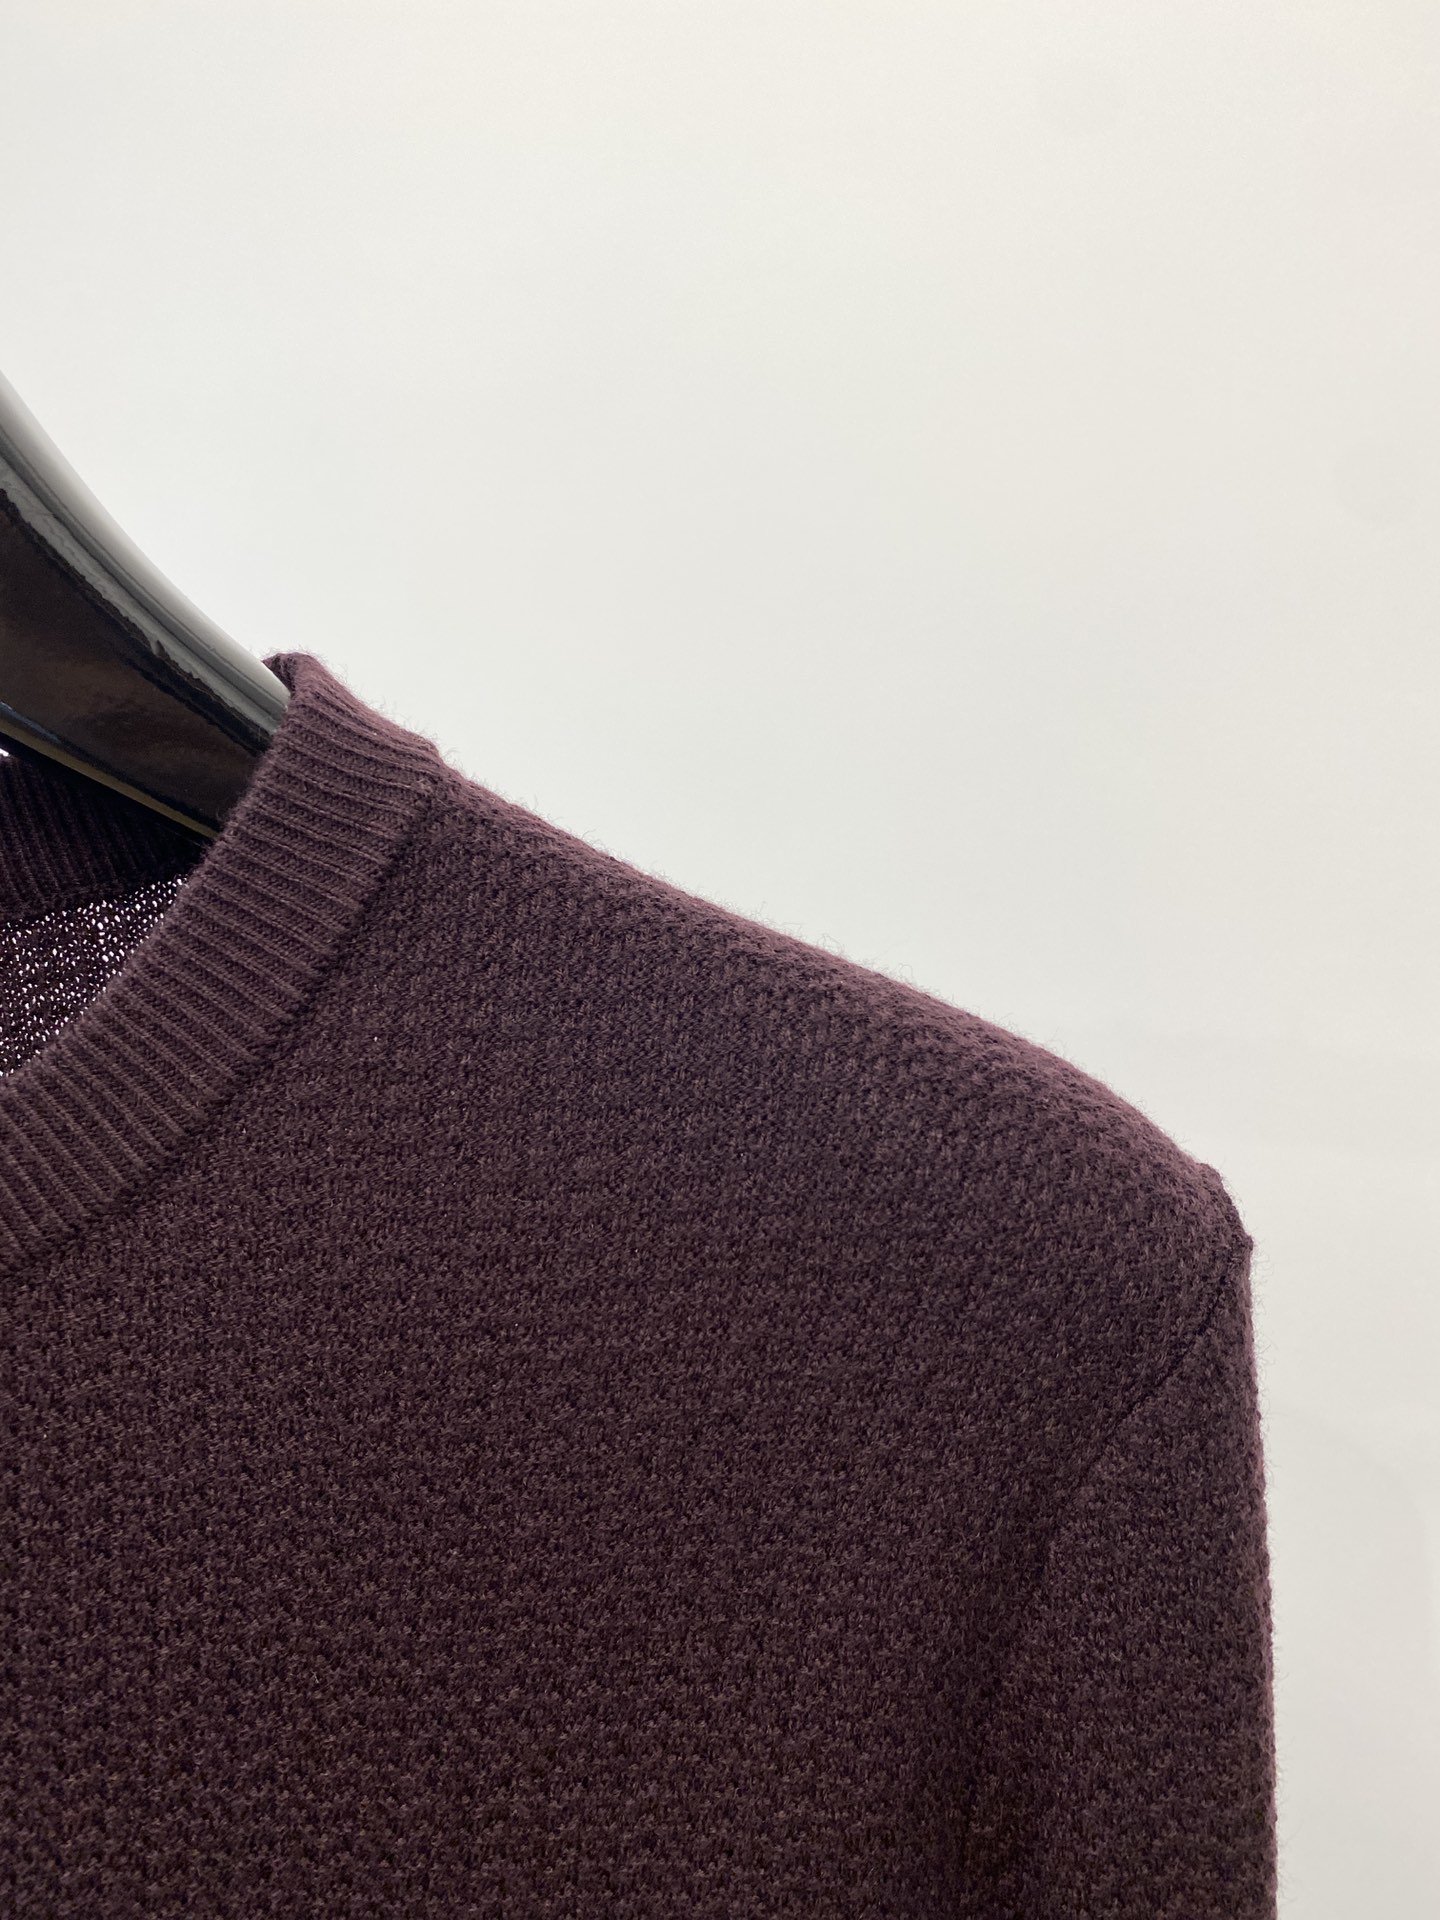 普拉达2023秋冬新品羊毛衣具有手感细腻柔软可直接与肌肤接触让暖心的纱线变化出细腻的质感顶级工艺极具特色